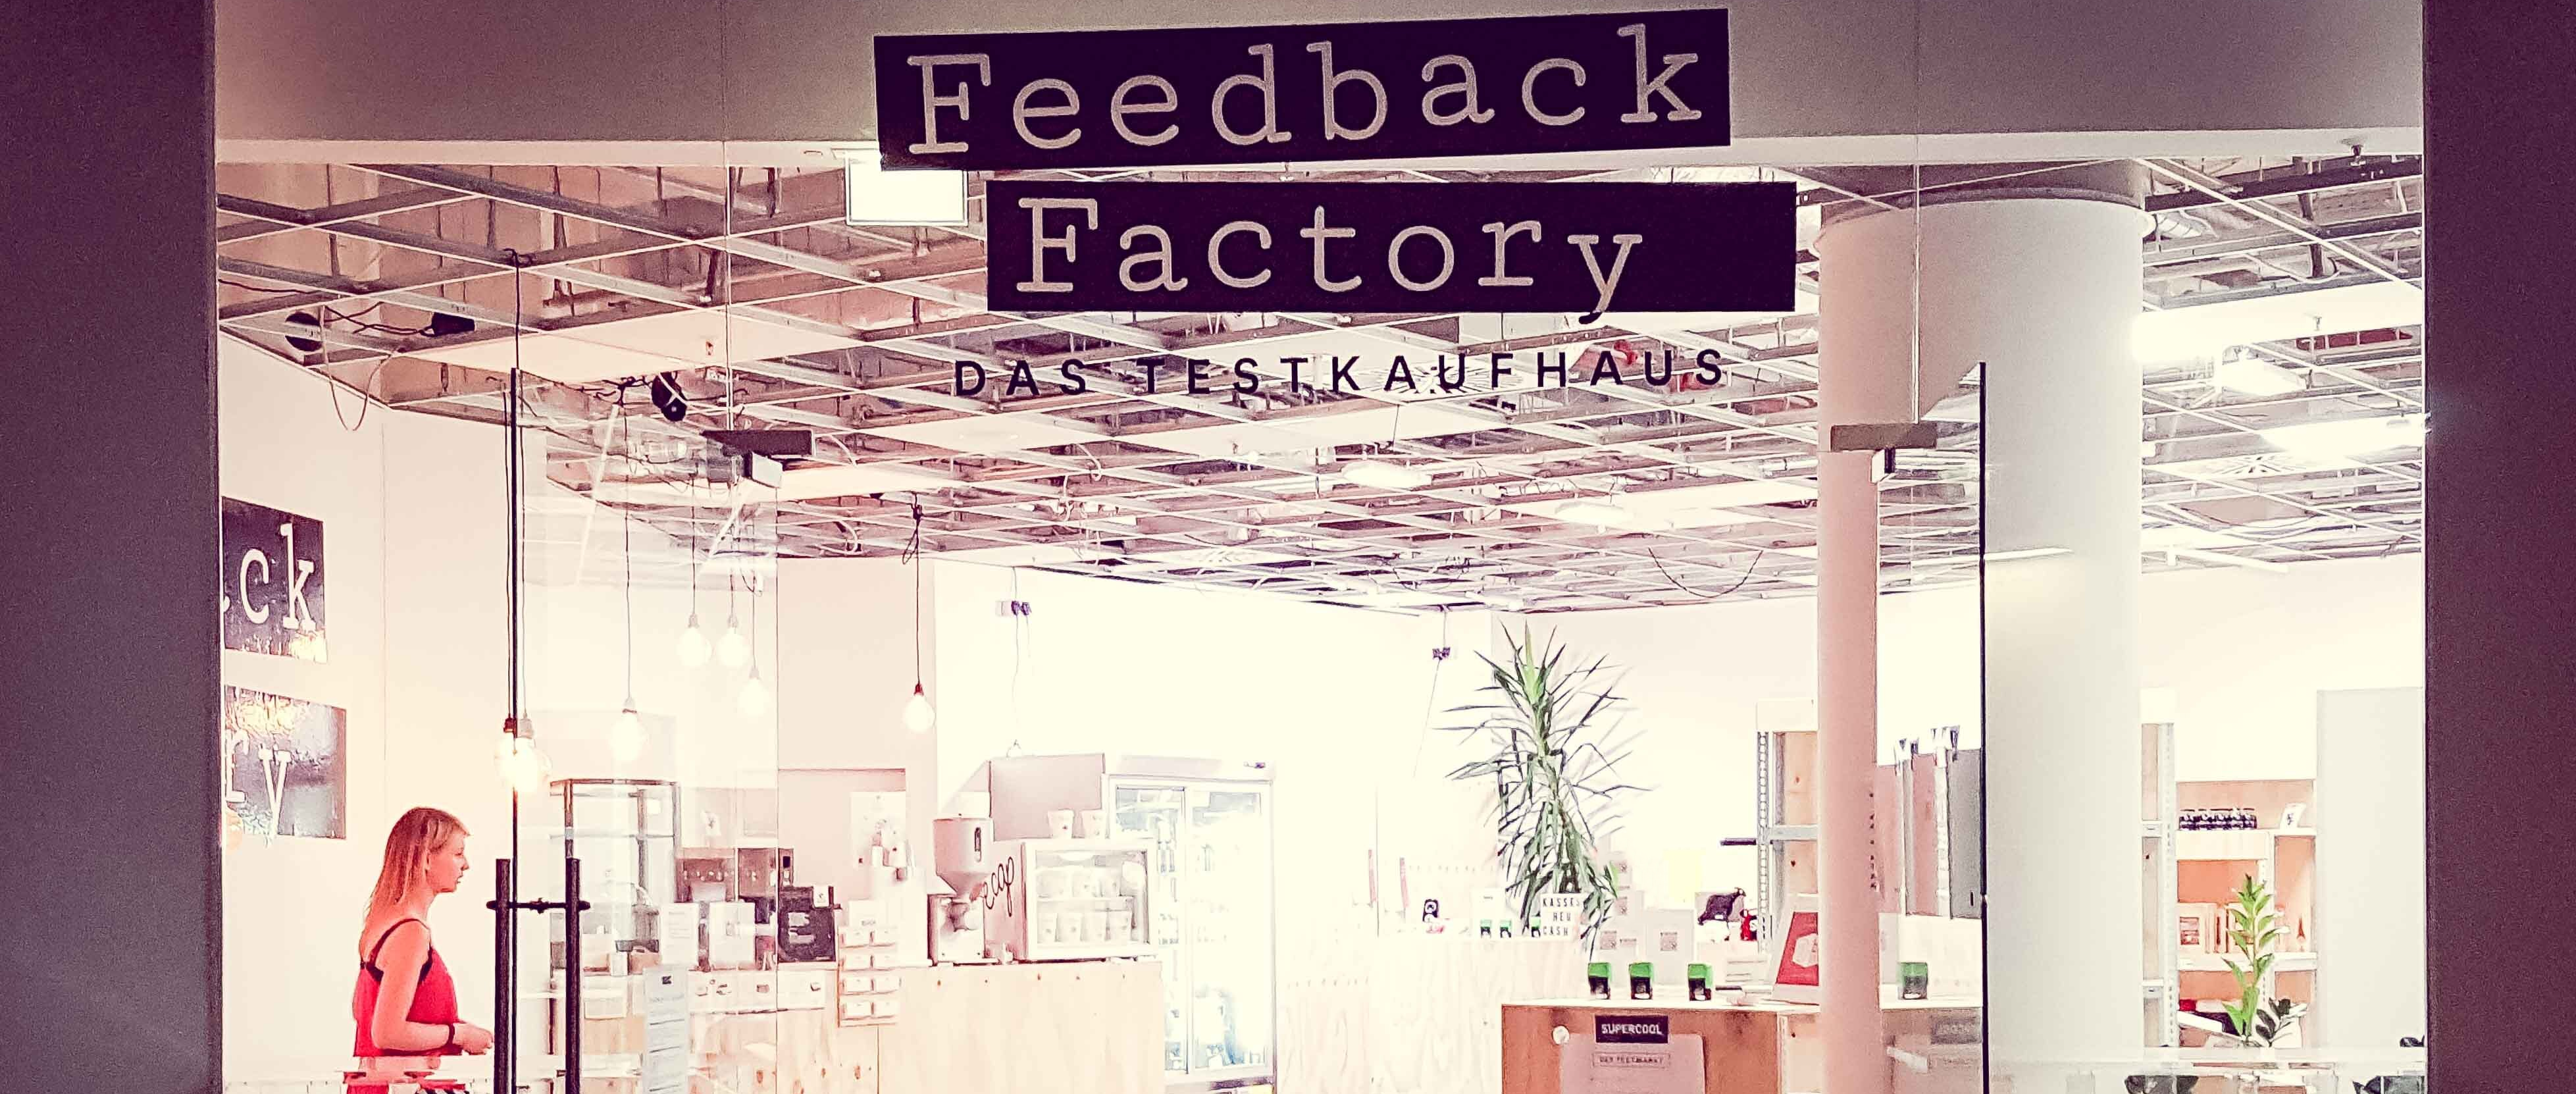 Feedback Factory - <br/>Das Testkaufhaus